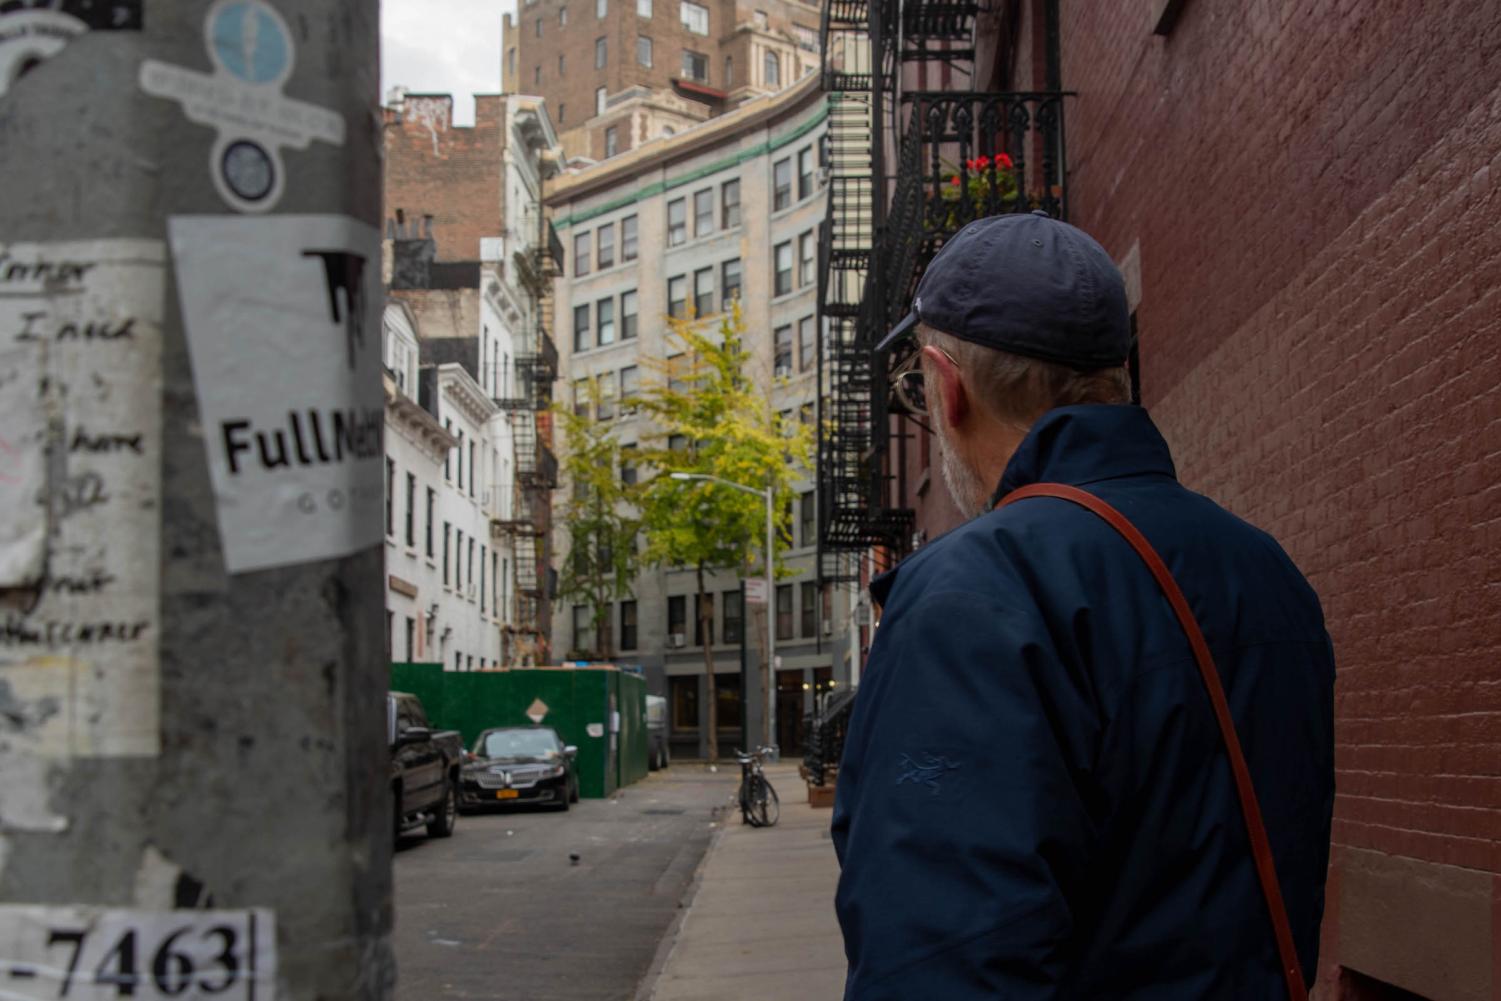 Alan Grossman, wearing a blue jacket and a blue cap, walks down a narrow street.